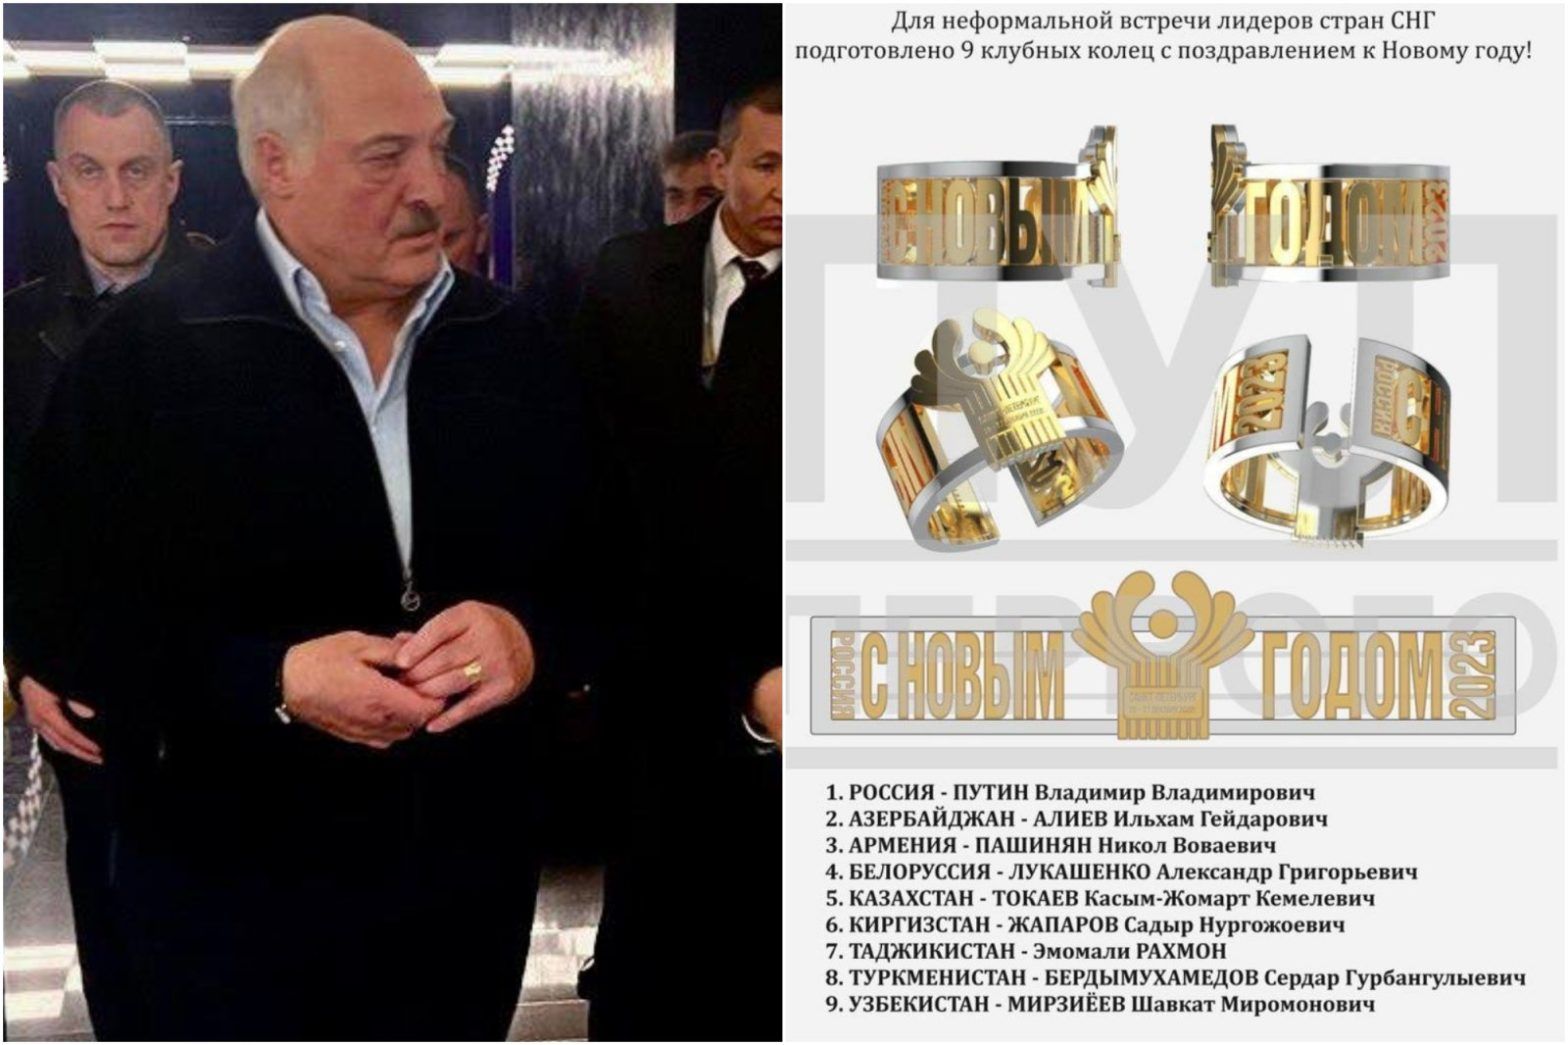 Președintele Lukashenko purtând inelul primit de la Putin, sursă foto Lithuania Posts